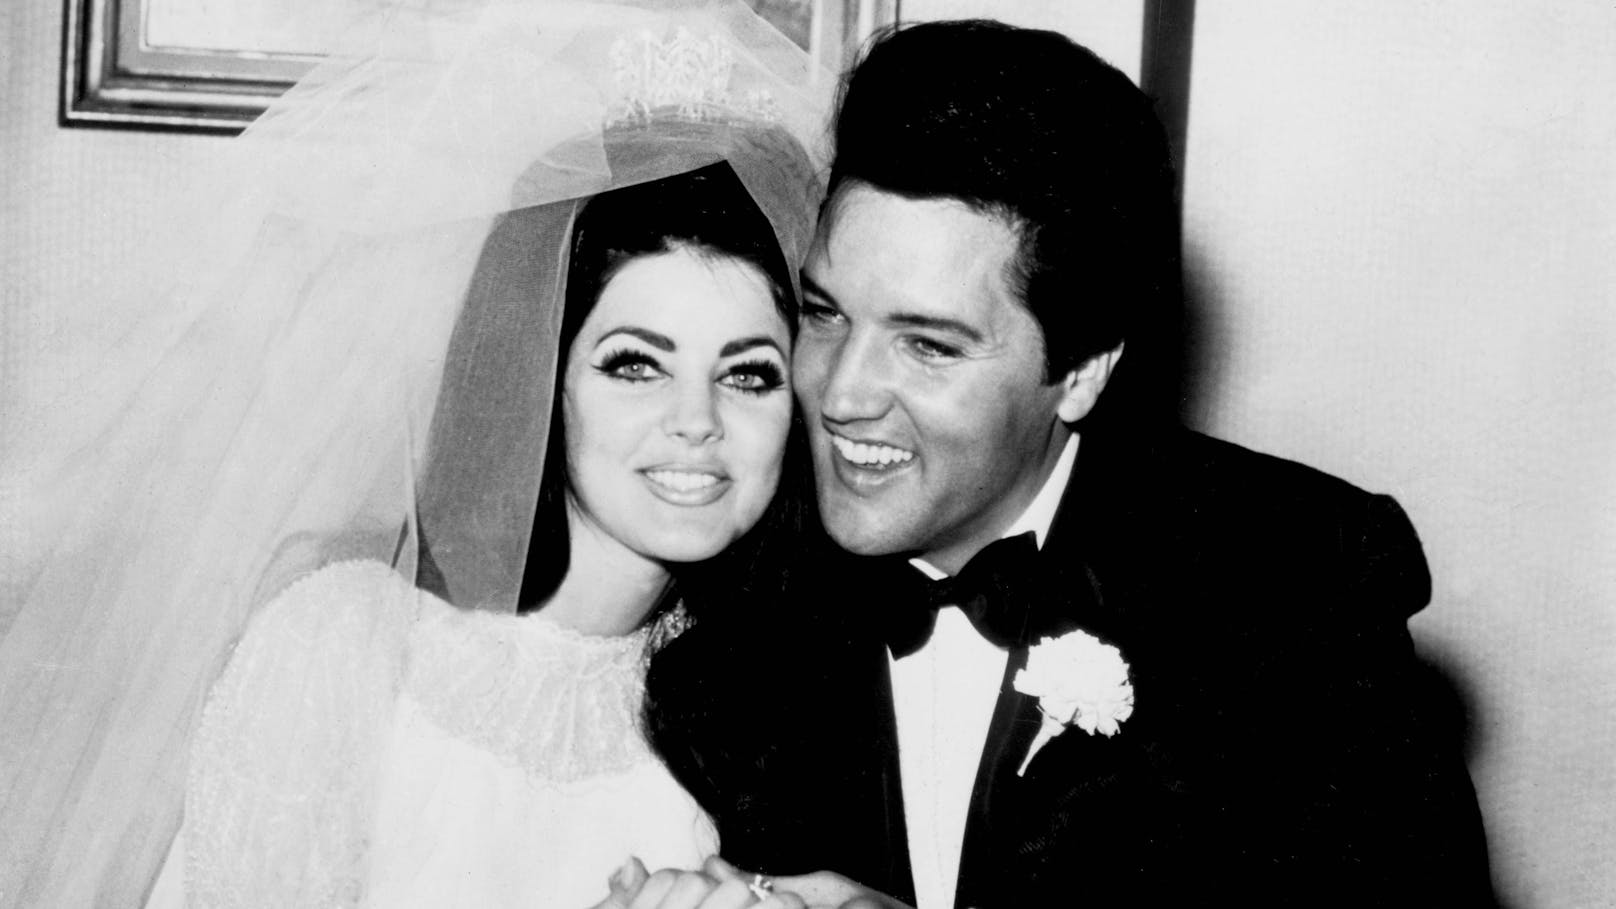 Bekannt wurde Priscilla als Ehefrau von Elvis Presley, dem King of Rock 'n' Roll.